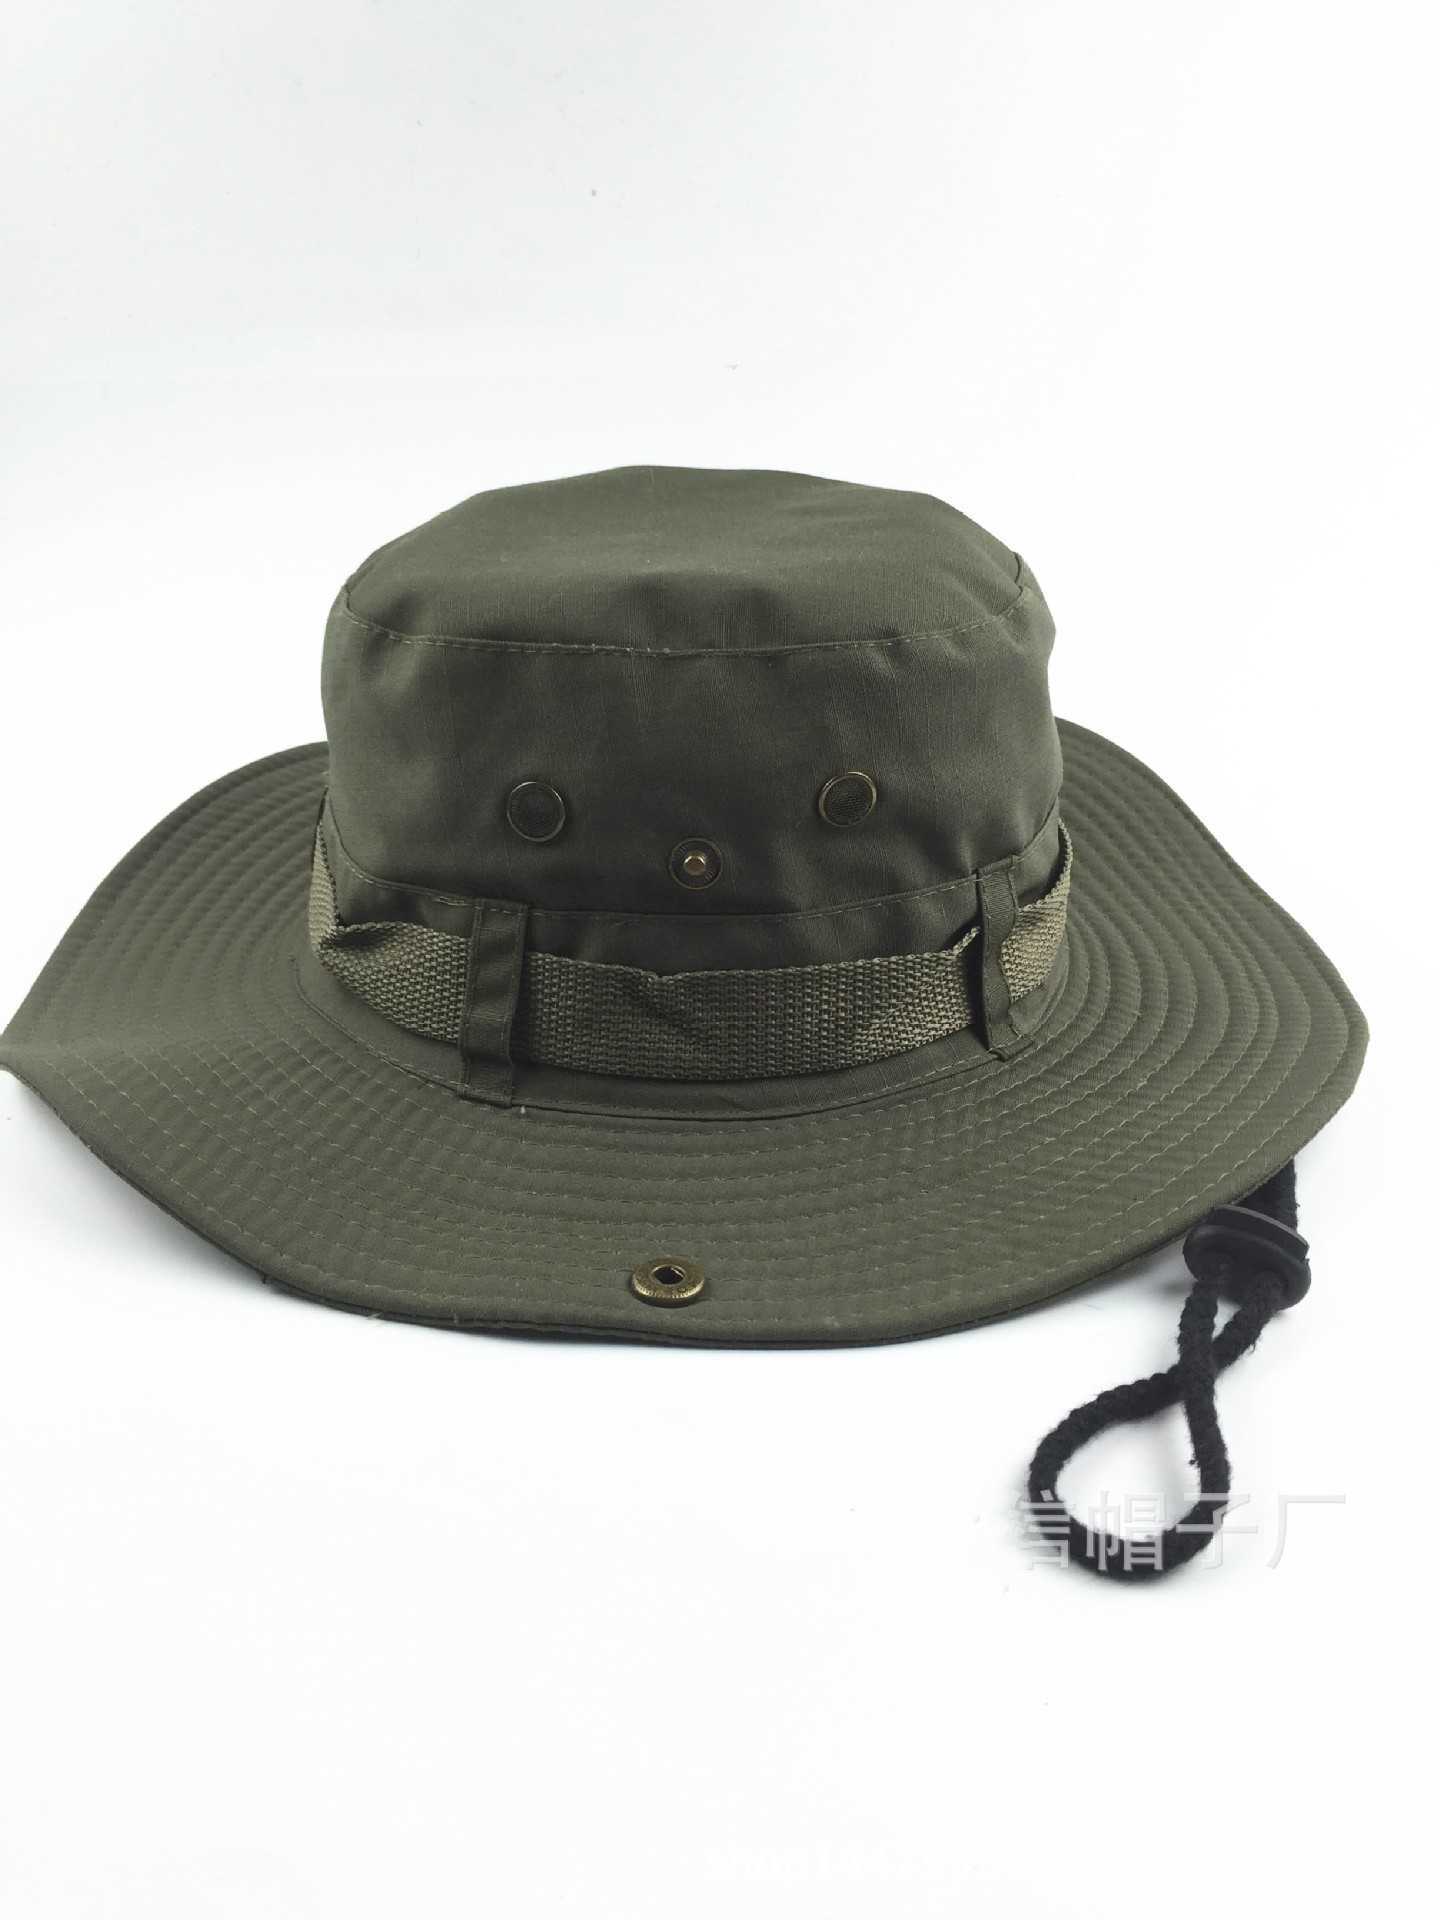 Sombreros de ala ancha Sombreros de cubo de camuflaje militar de moda Sombrero de pescador de camuflaje de selva con ala ancha Sombrero de cubo de pesca para el sol Gorras de camping Gorras de algodón G230224